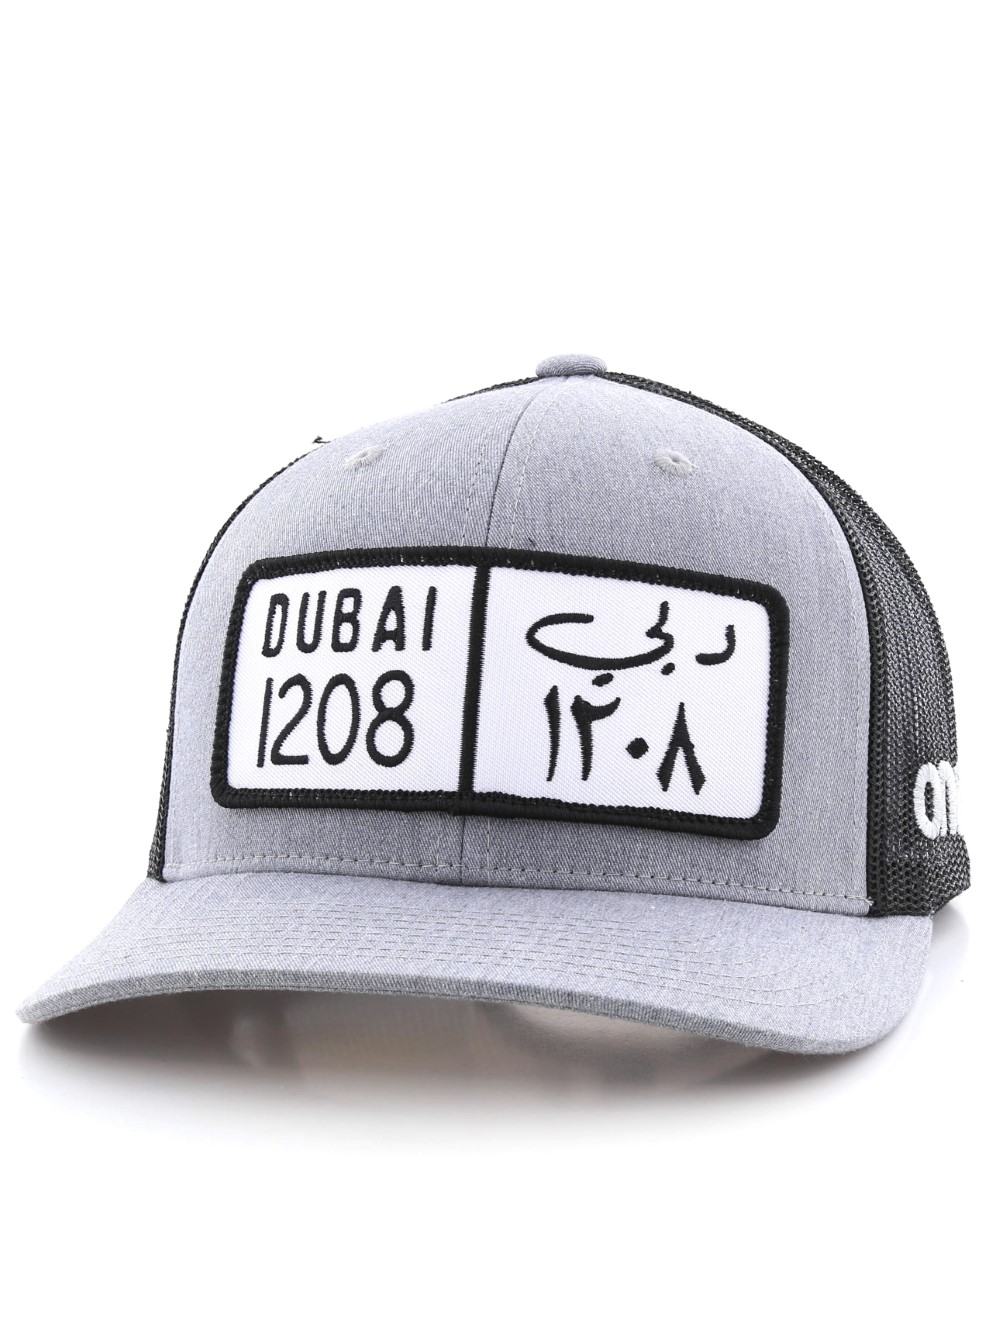 One8 Dubai Classic Plate Curved Brim Trucker Hat Unisexcap Osfa